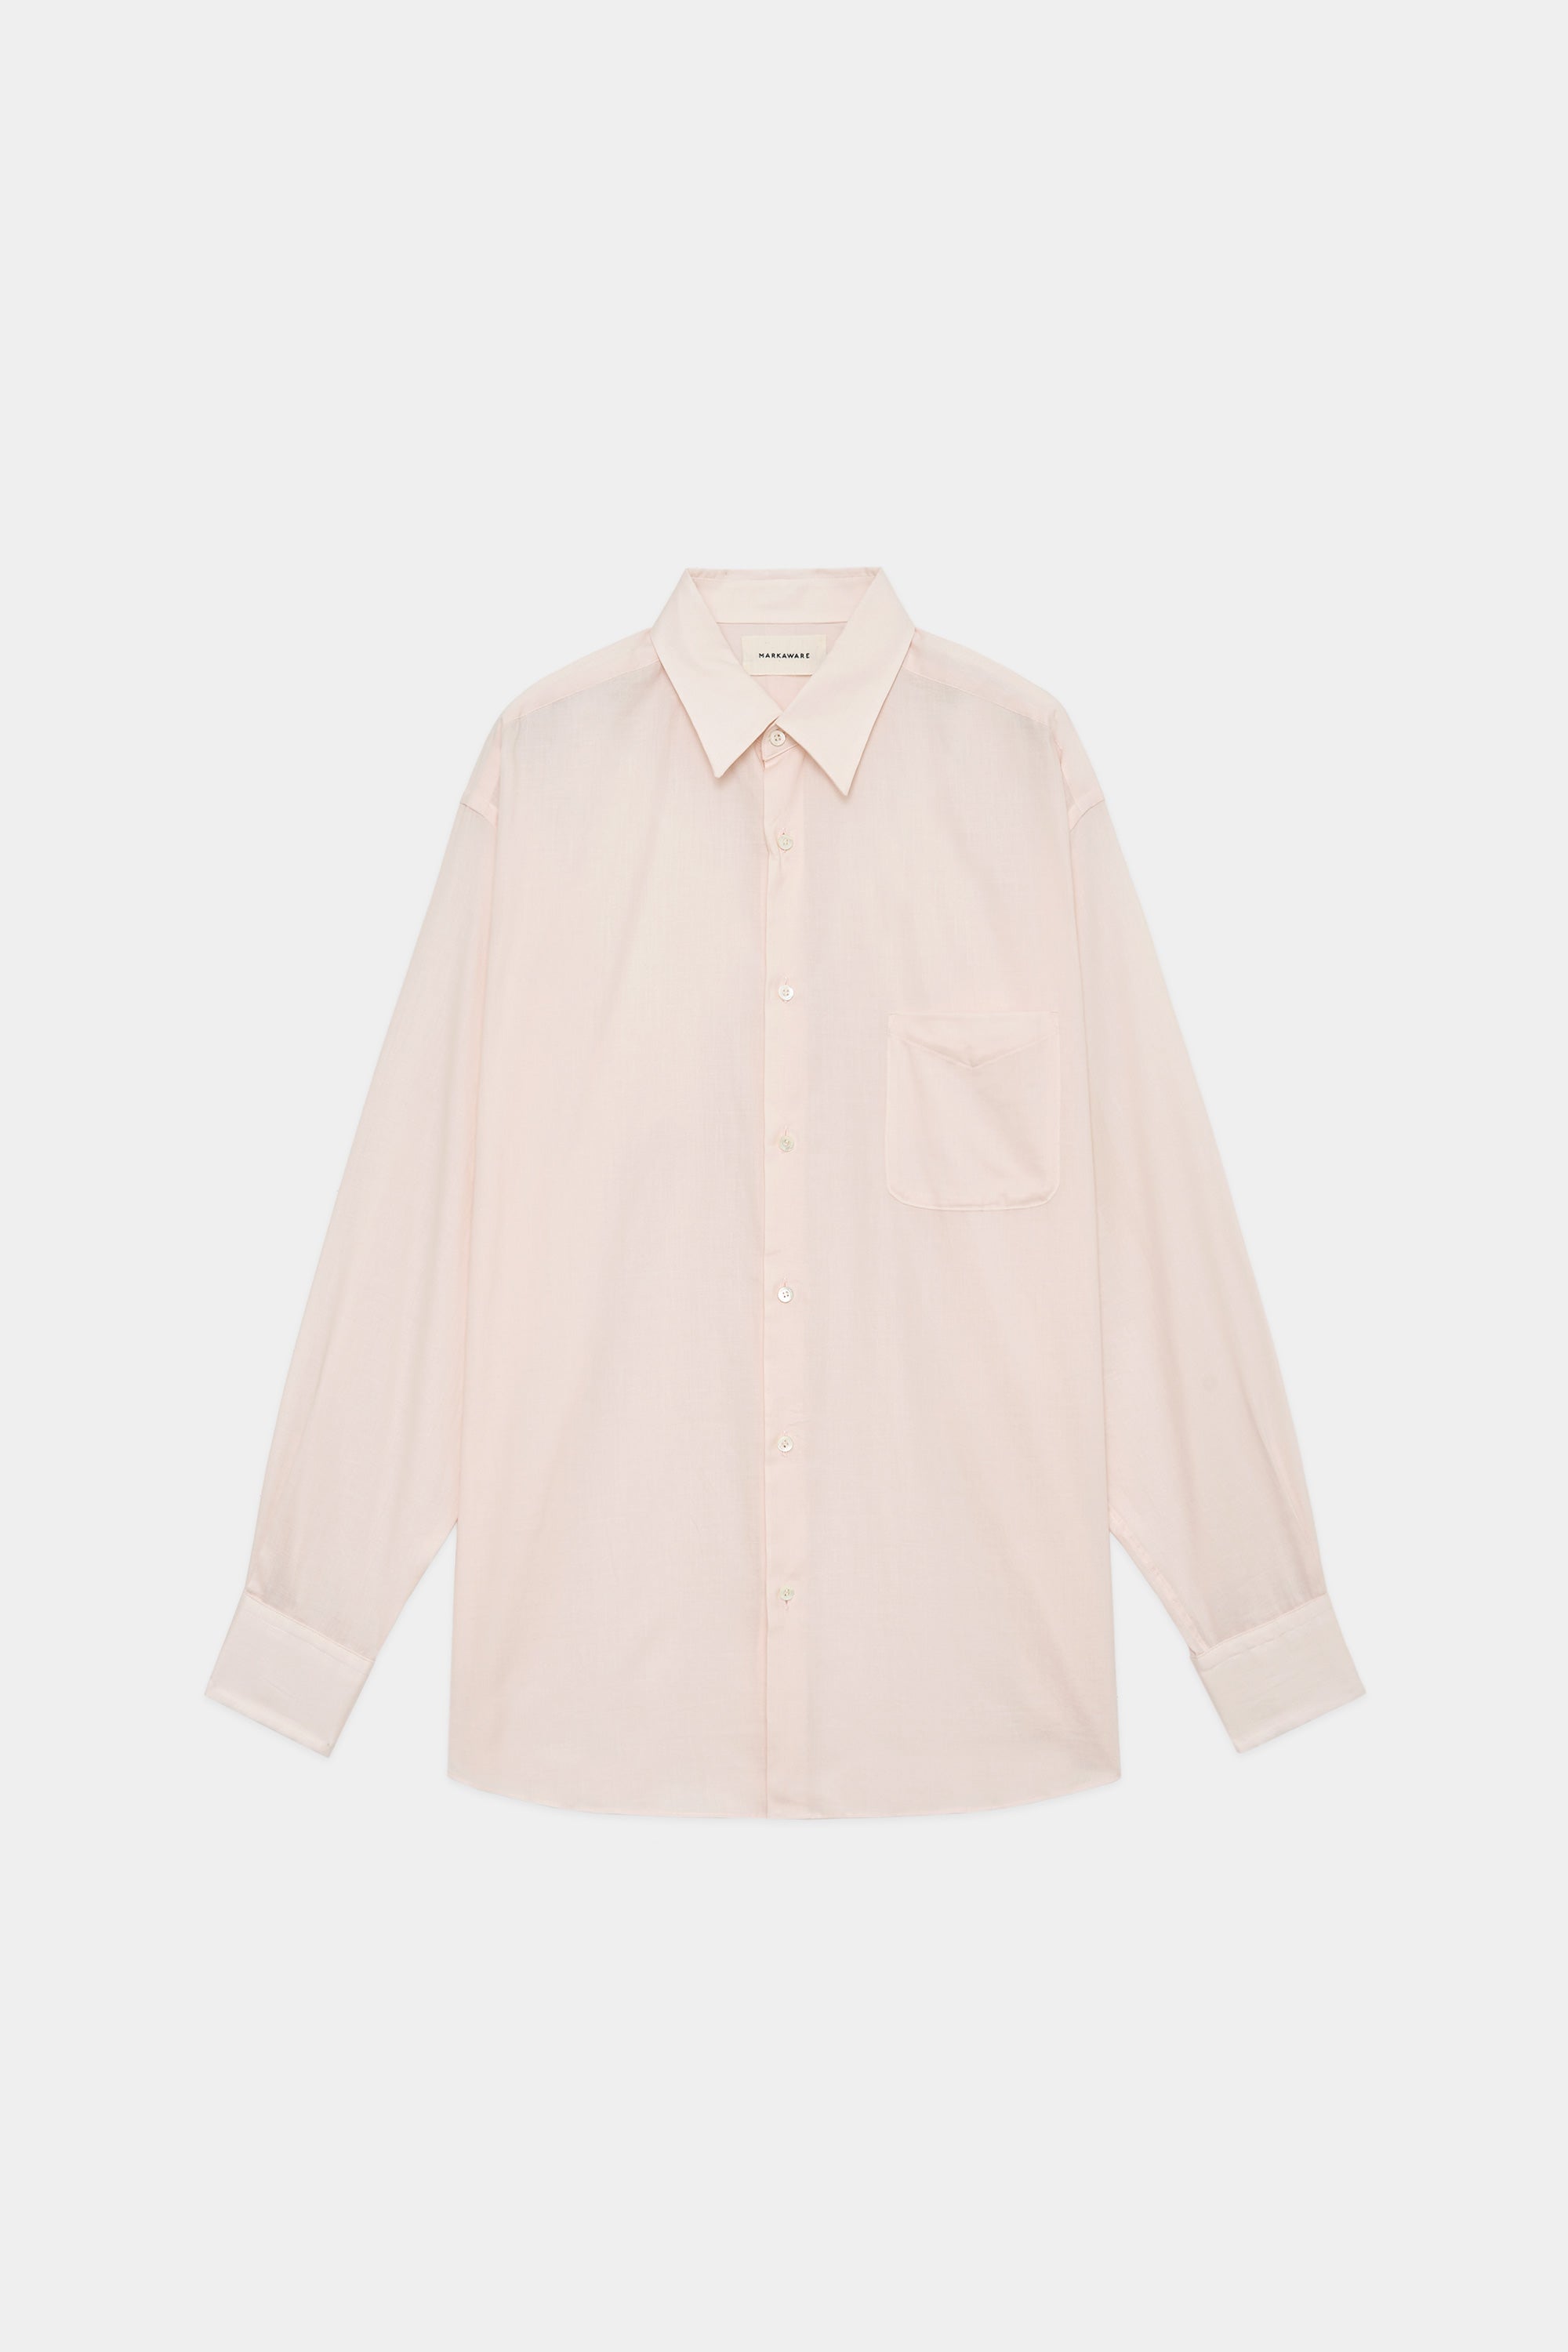 オーガニックペルーピマコットン60/-ローン / コンフォートフィットシャツ, Pink